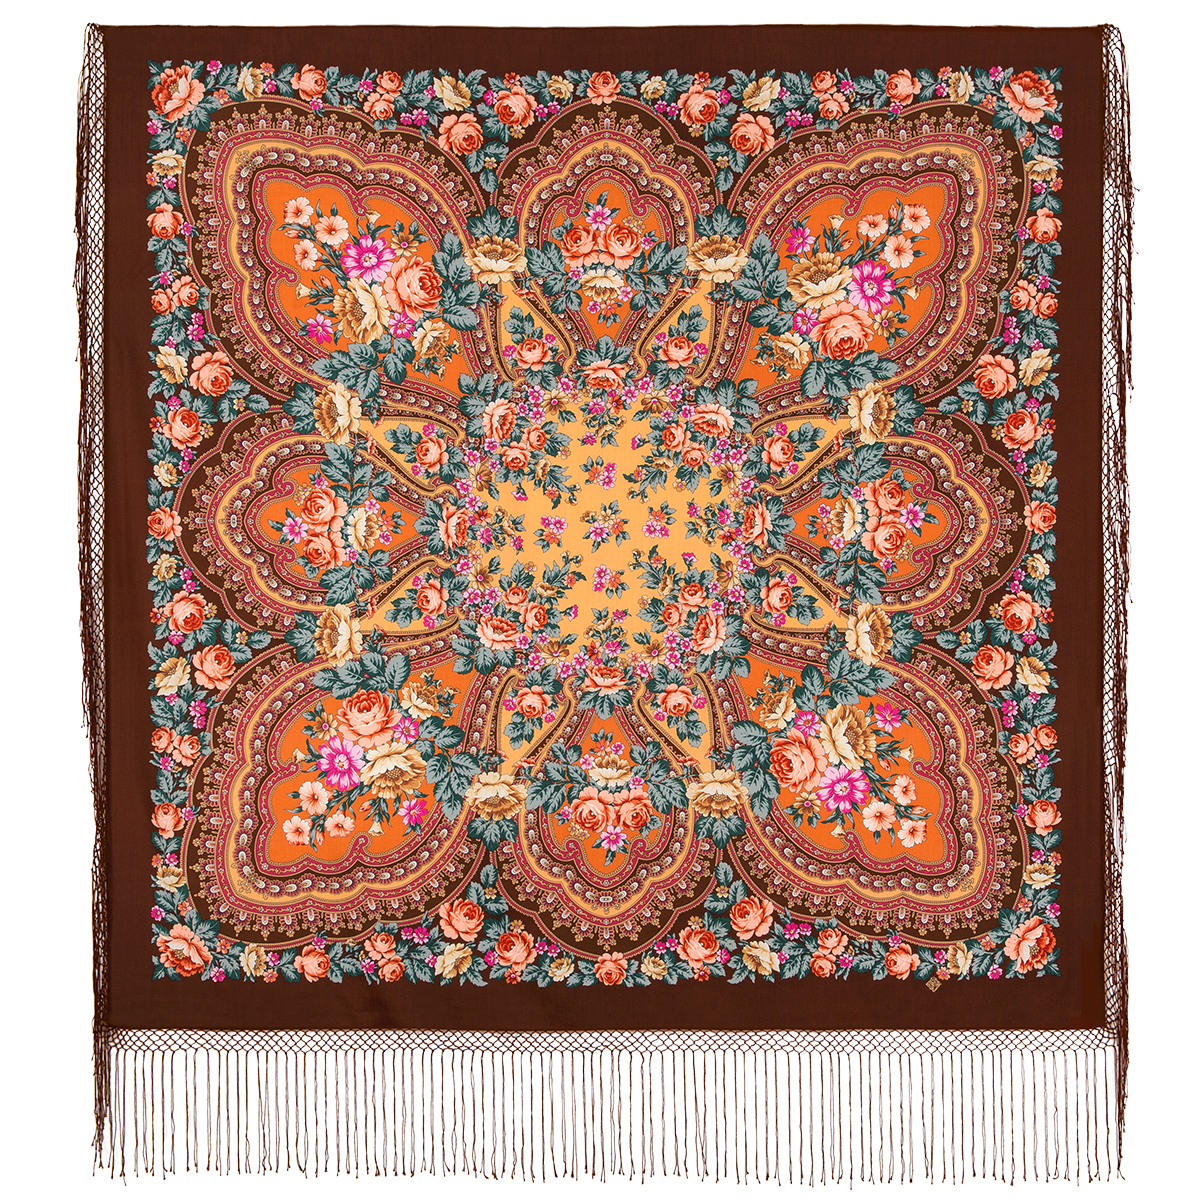 Платок женский Павловопосадский платок 341 коричневый, 148х148 см